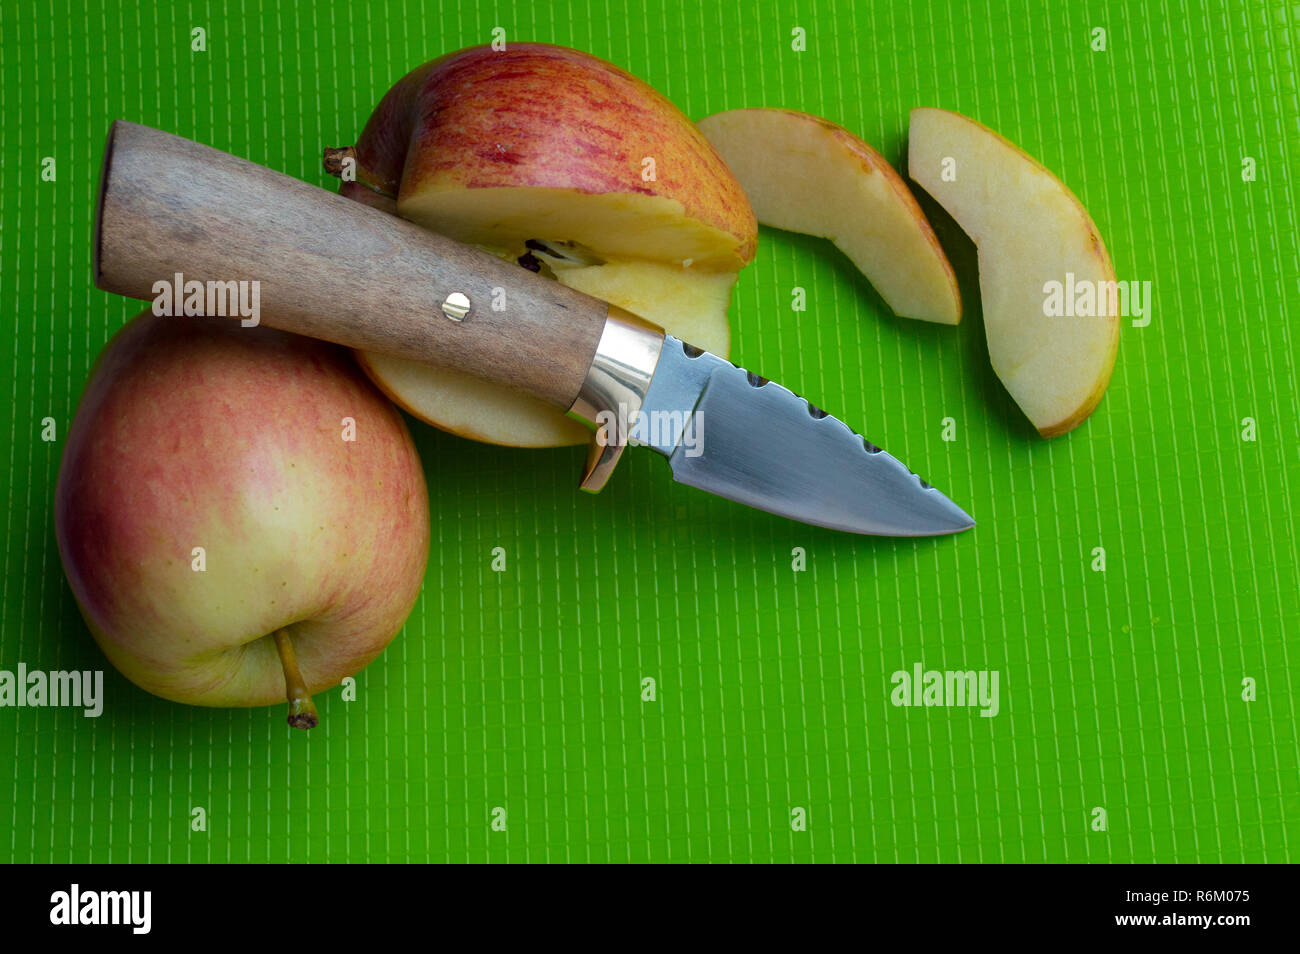 Handliches kleines Taschenmesser zum Schneiden leckere saftige Äpfel auf grüne Schneidbrett verwendet Stockfoto